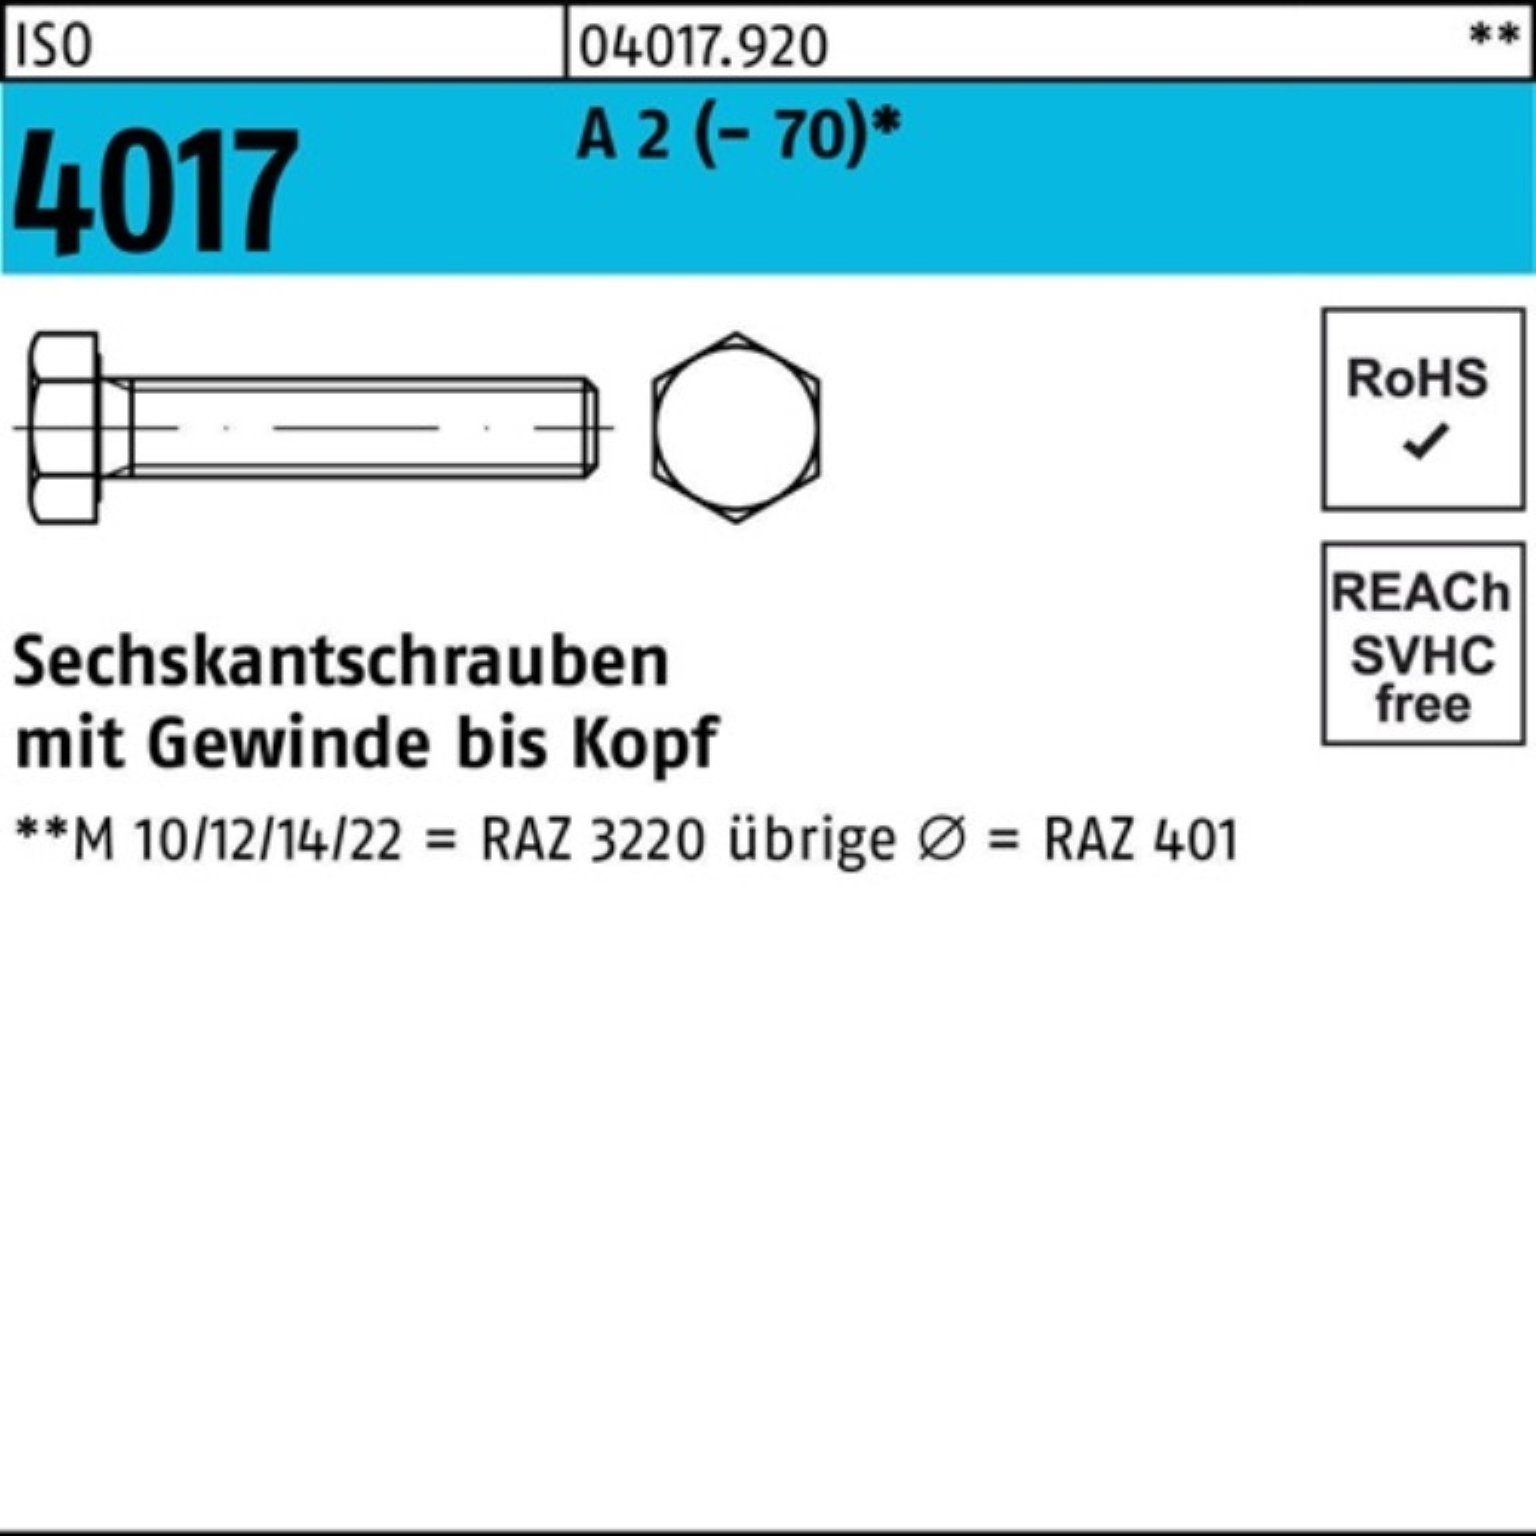 Stück Sechskantschraube Sechskantschraube M6x VG 500er 500 A 2 ISO Bufab 4017 Pack 12 (70)